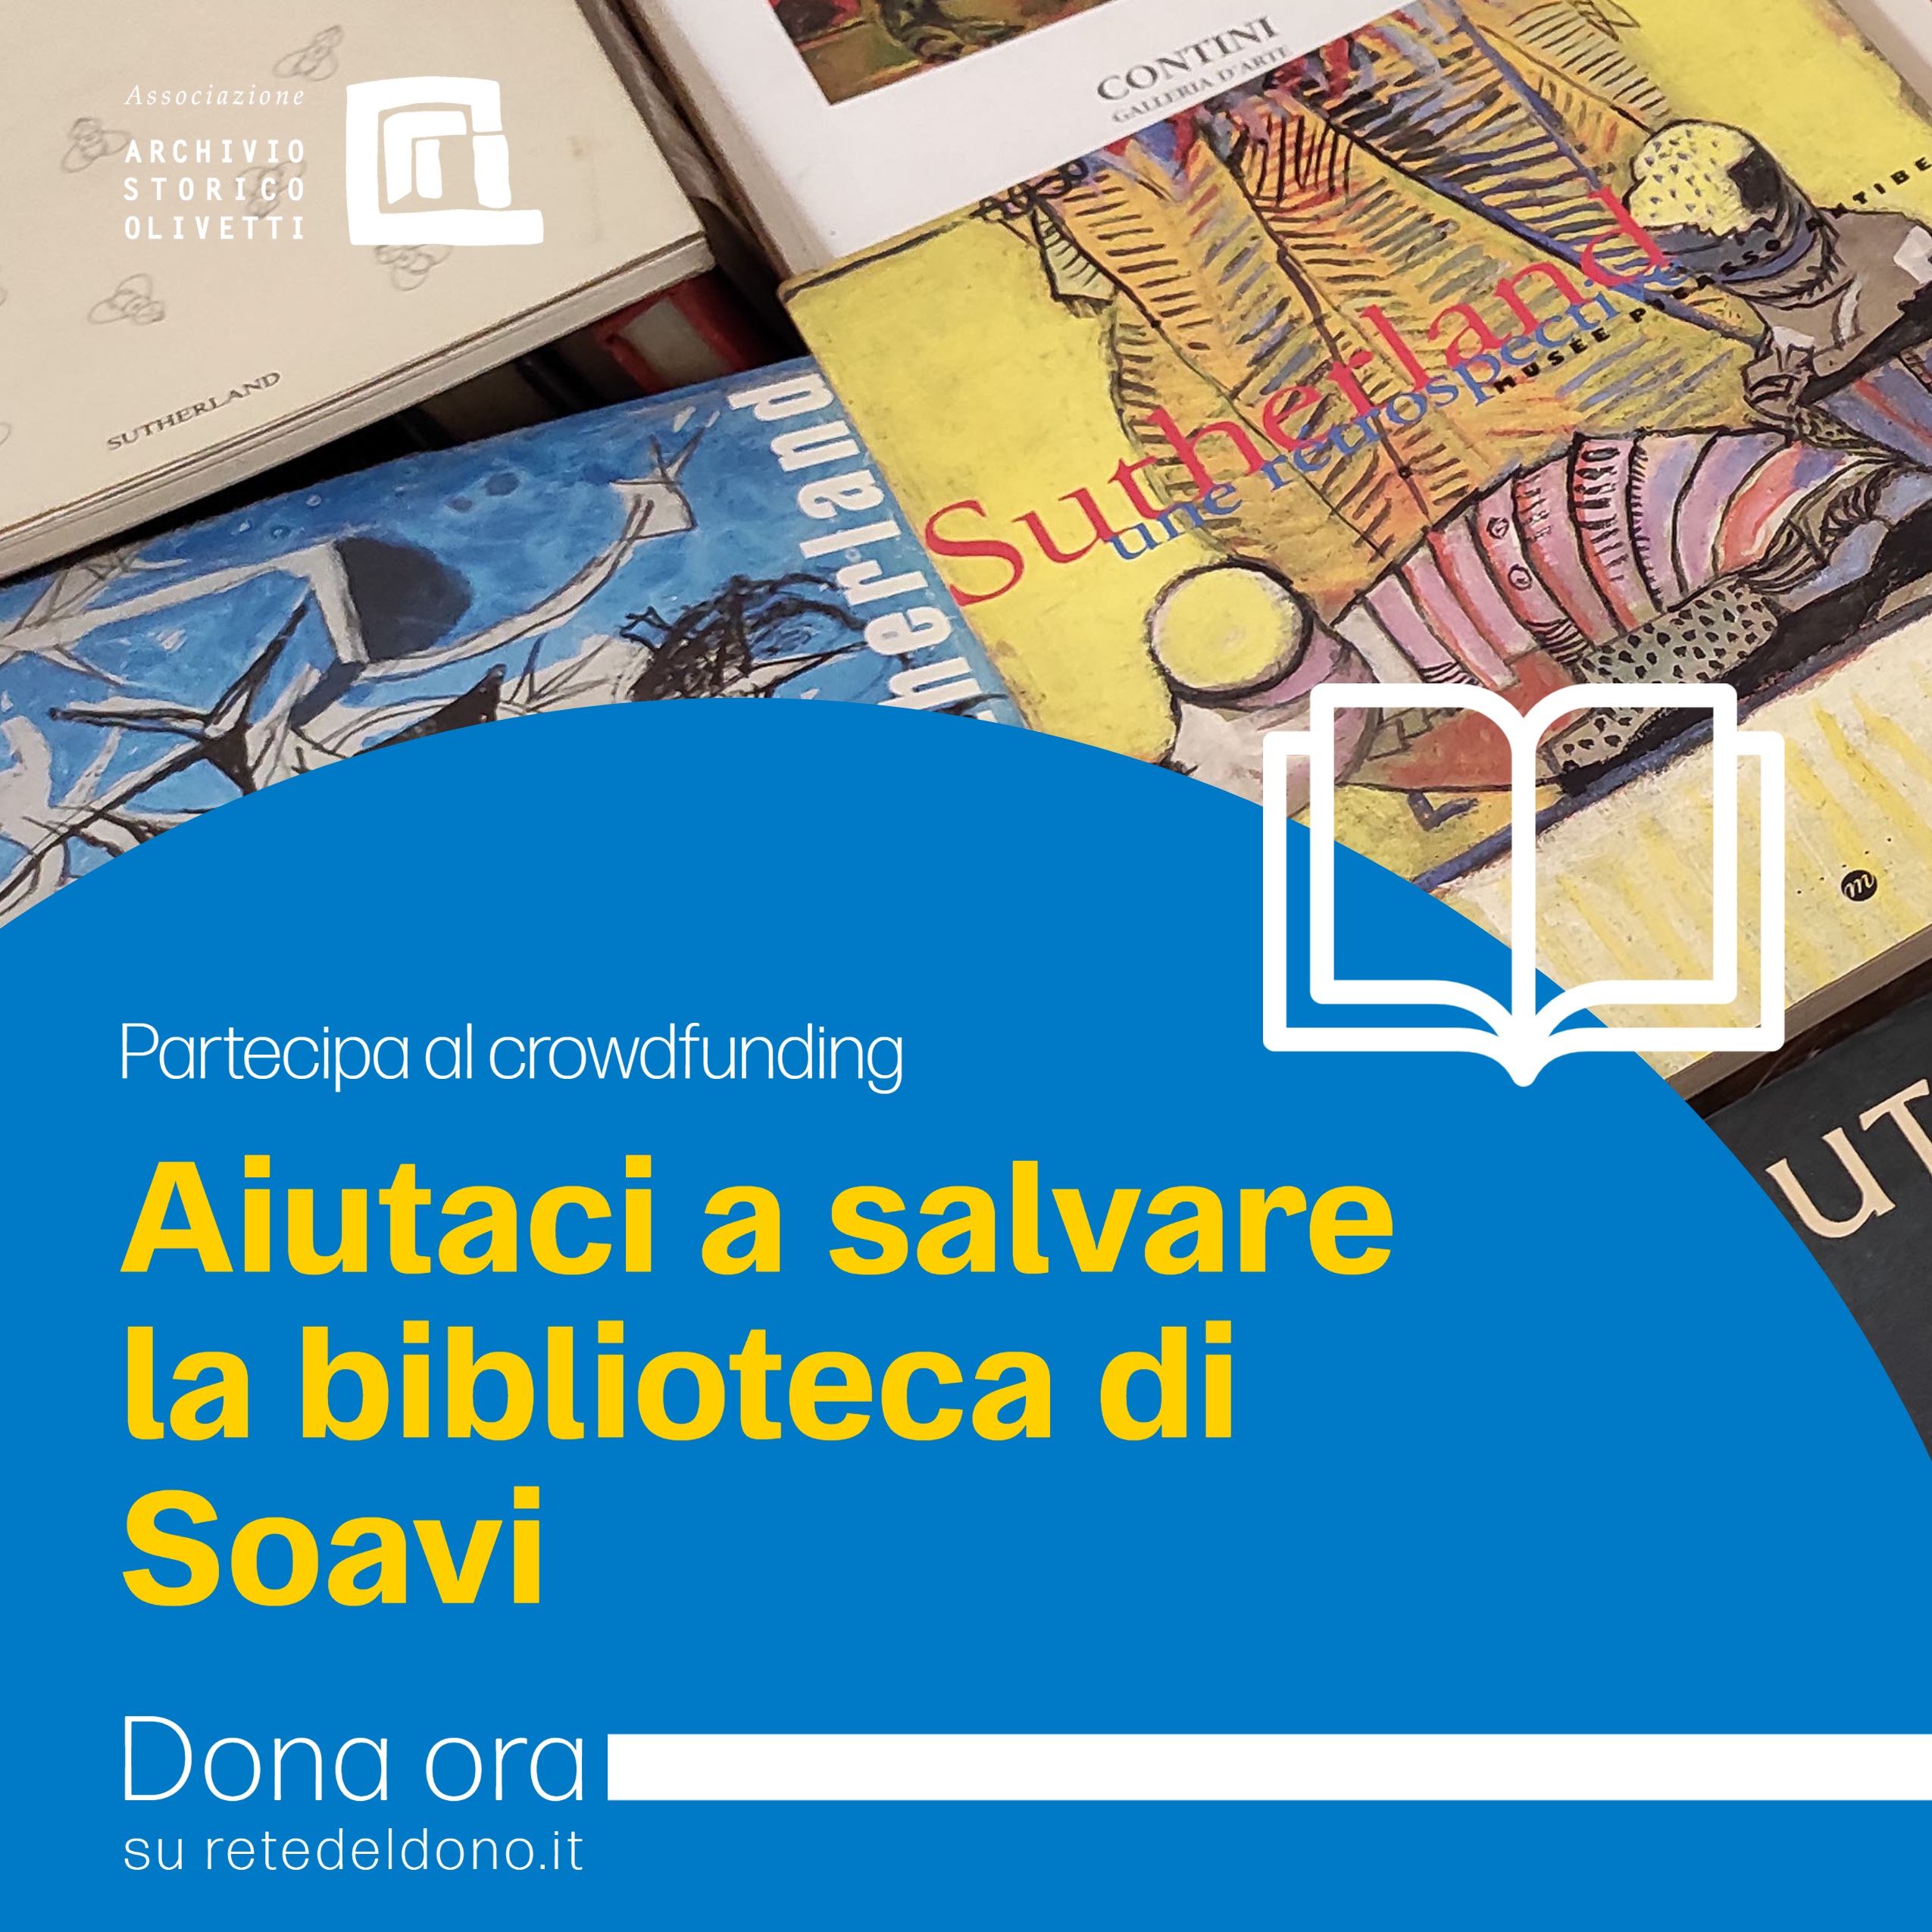 La biblioteca di Soavi: tesoro di tutti-Associazione Archivio Storico Olivetti